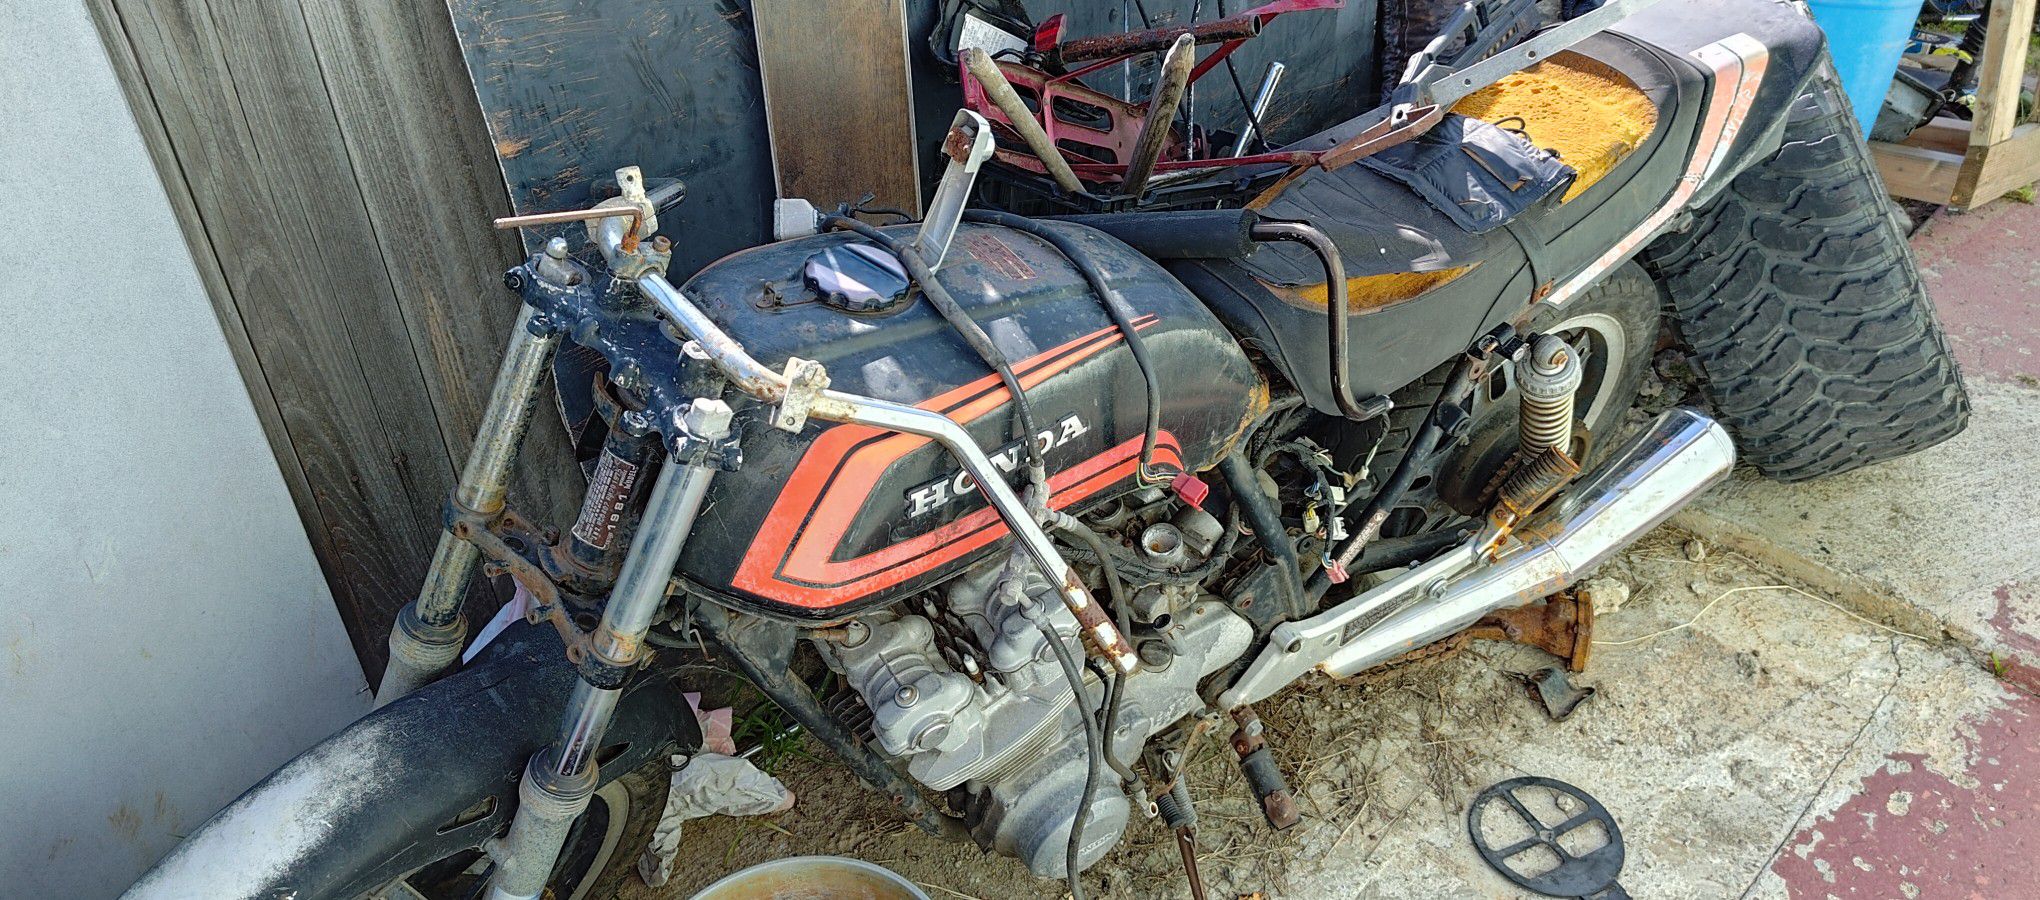 1981 Honda CB750